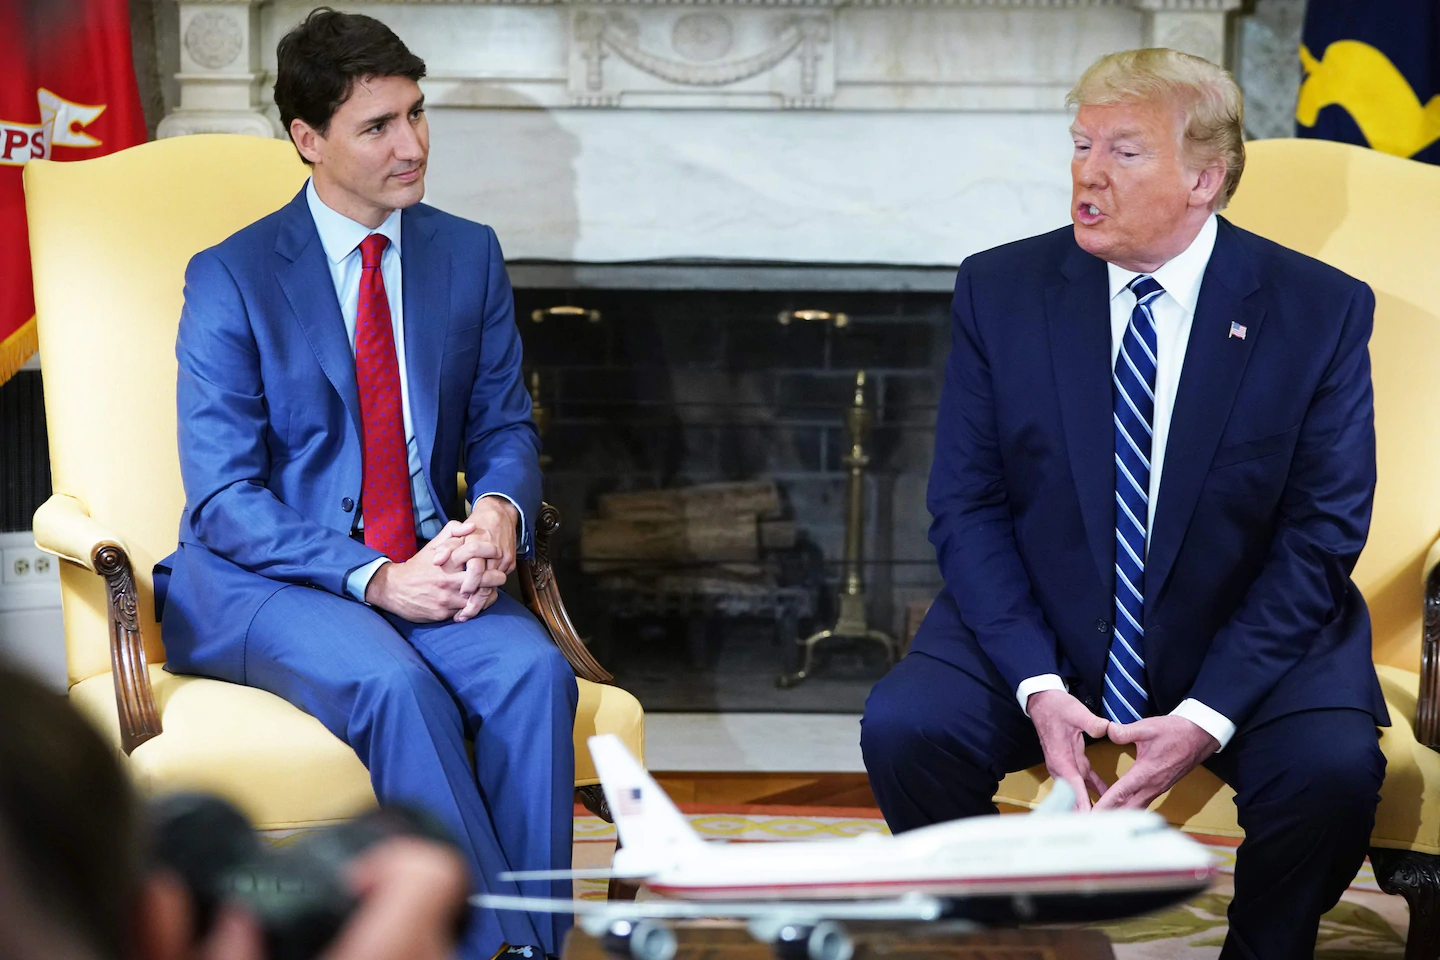 Trump reimposes tariffs on Canadian aluminum